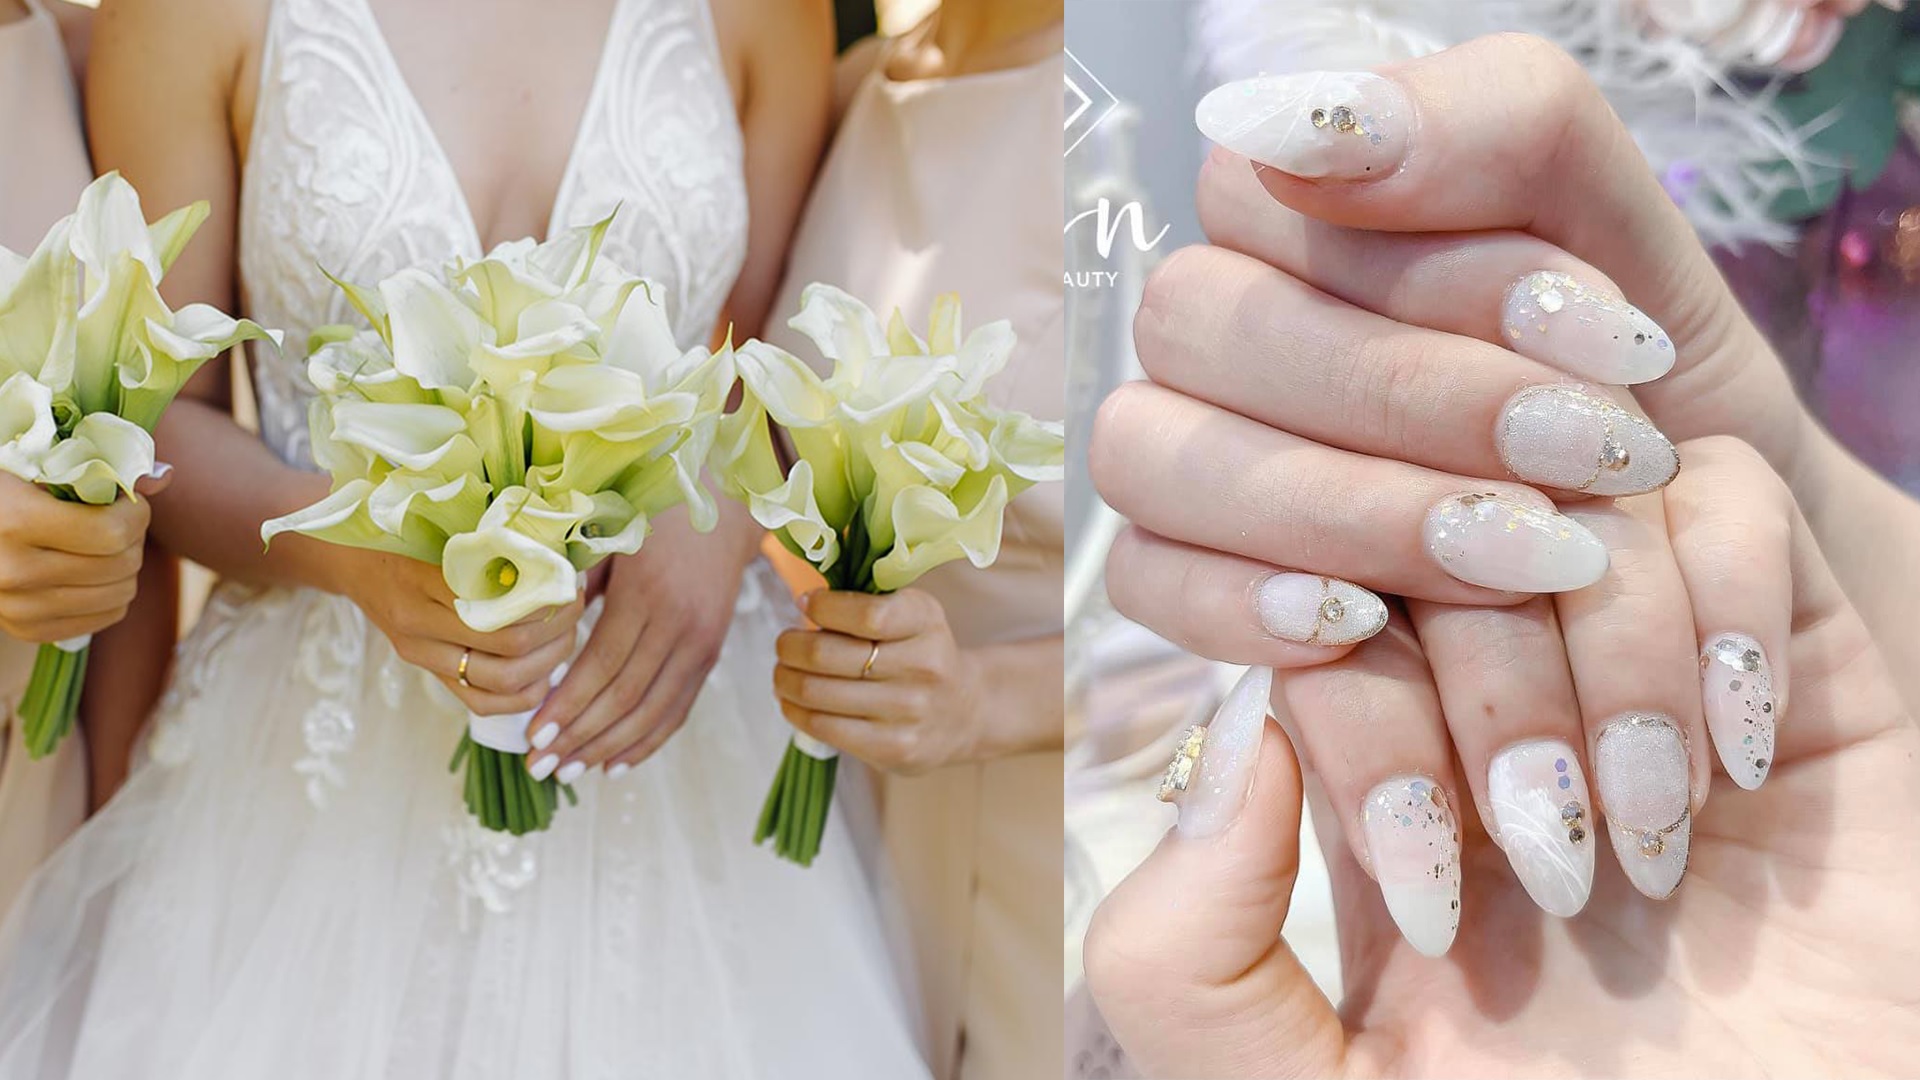 Sự kiện cưới đến gần, bạn đang lo lắng về việc làm móng tay để dành cho ngày đặc biệt này? Đừng quên ghé xem ảnh về các mẫu vẽ nail móng tay cô dâu đẹp nhất được chia sẻ trên trang. Bạn sẽ tìm thấy một mẫu phù hợp với phong cách và sở thích của bạn.